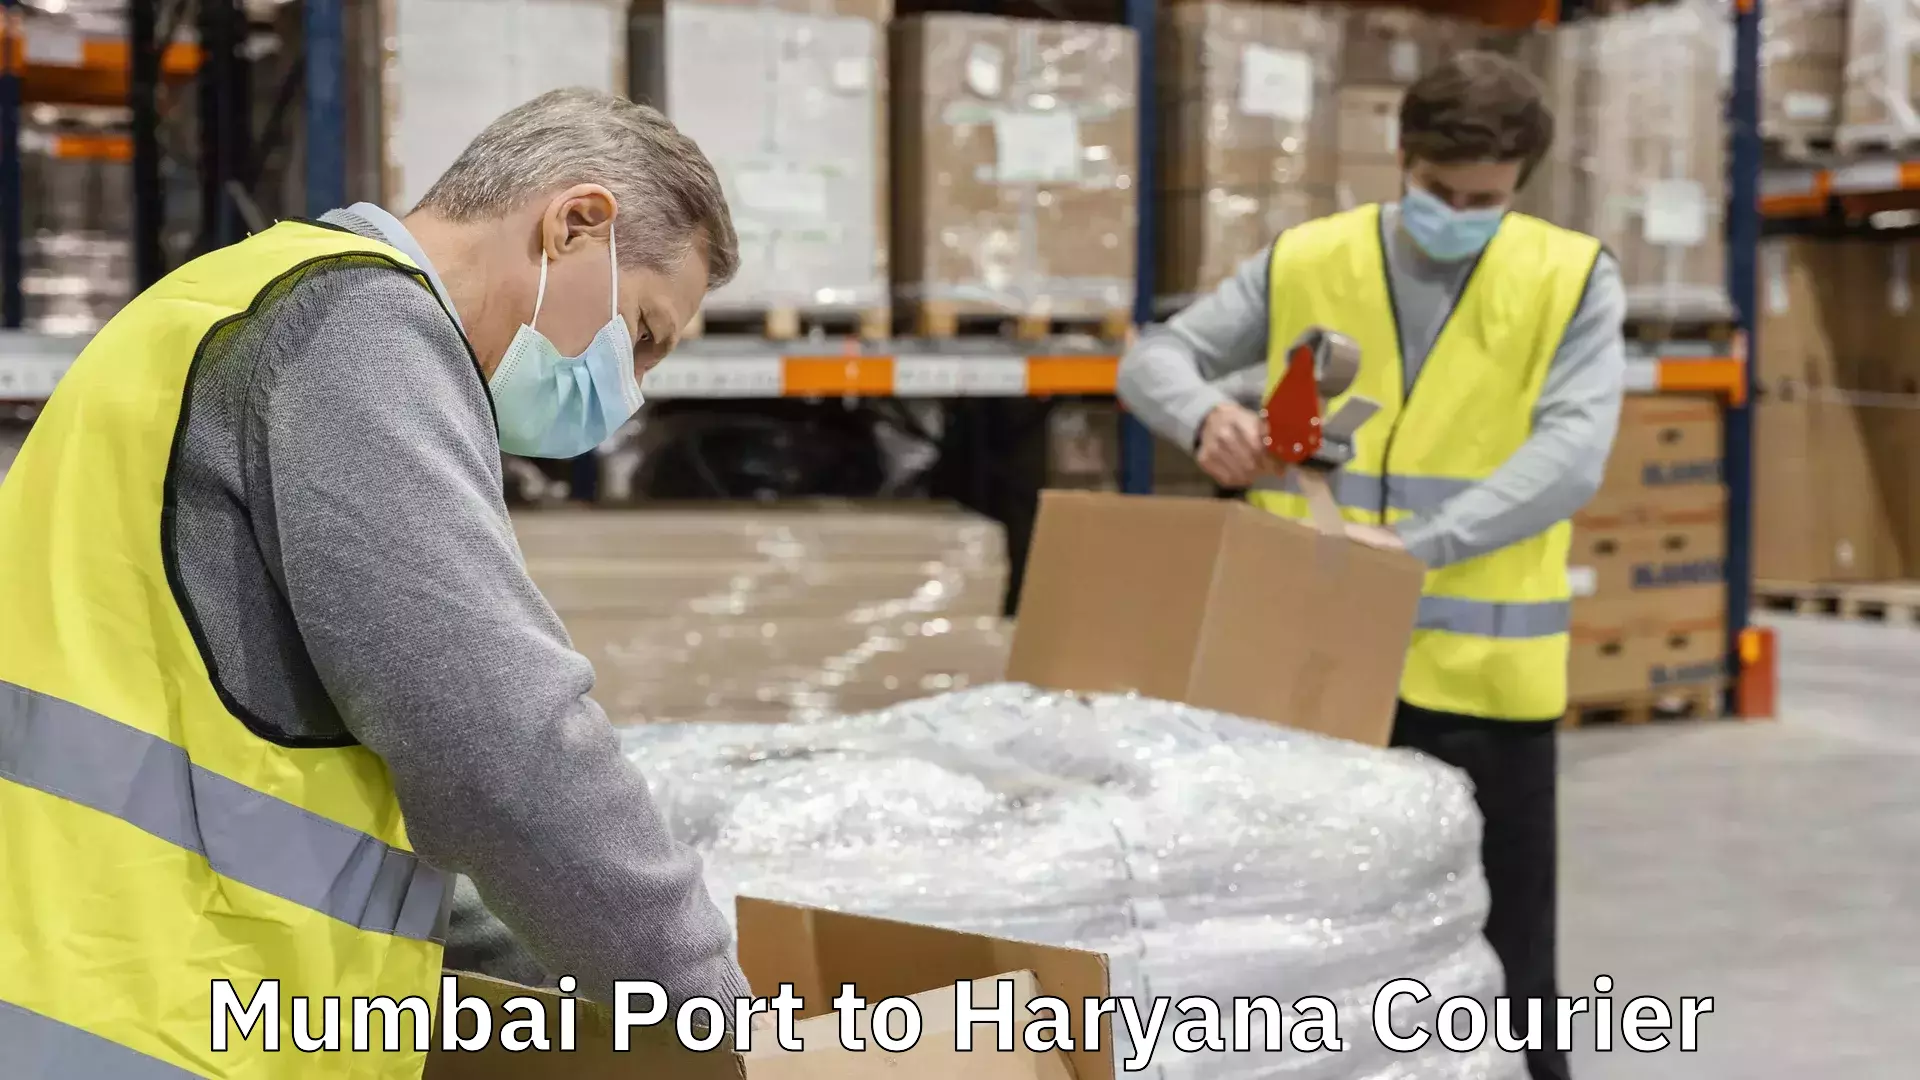 Multi-service courier options Mumbai Port to Haryana